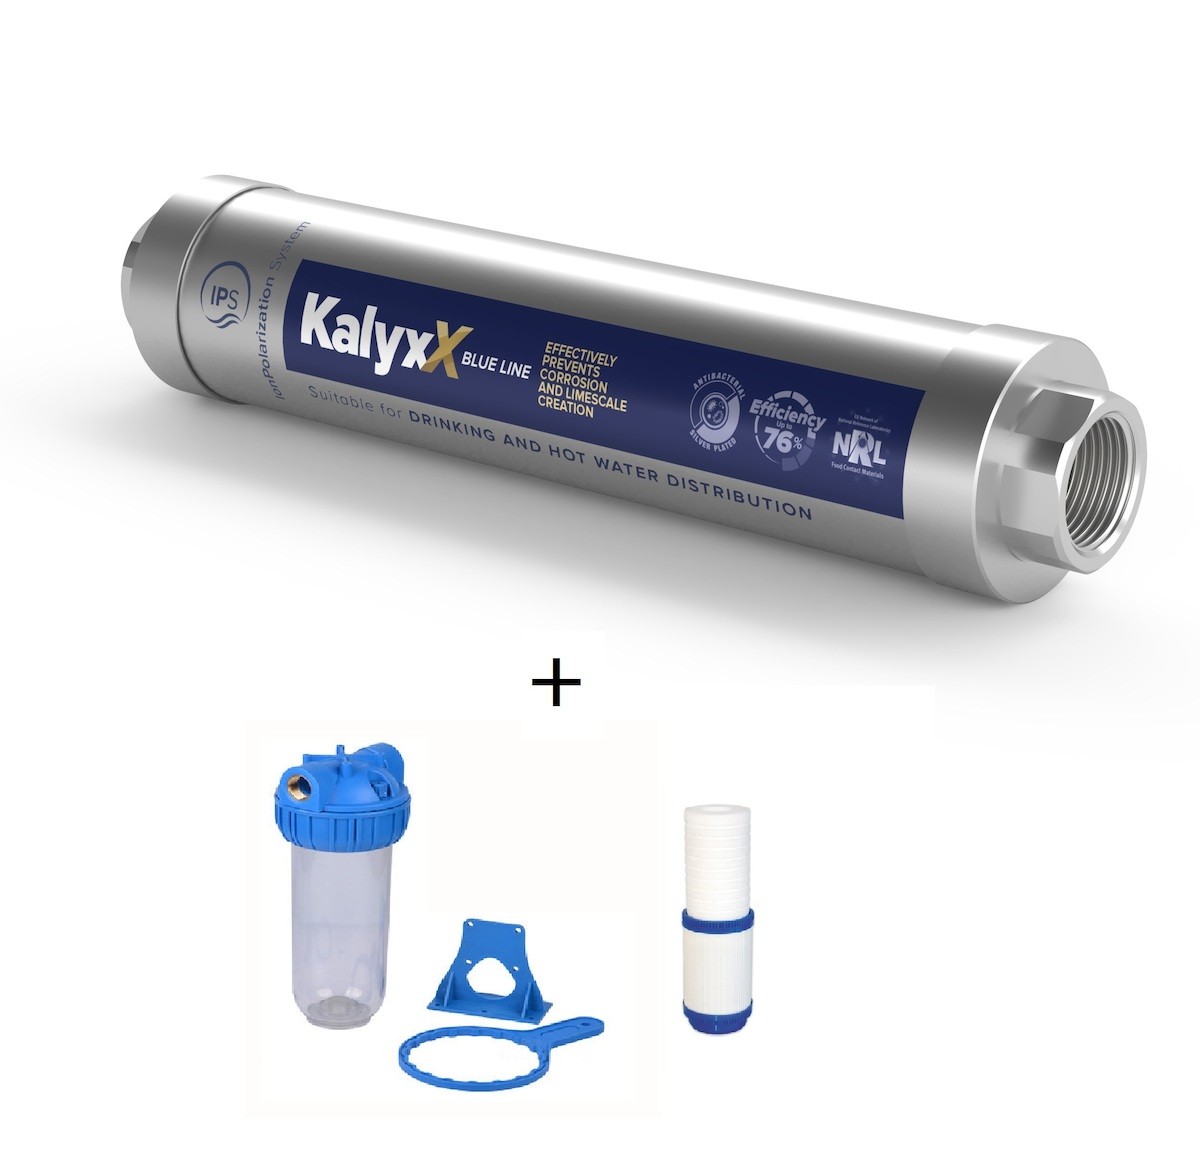 SAT - IPS KallyxX Blue line 1" + domácí filtr včetně vložky IPSKXBG1HF11010M SAT